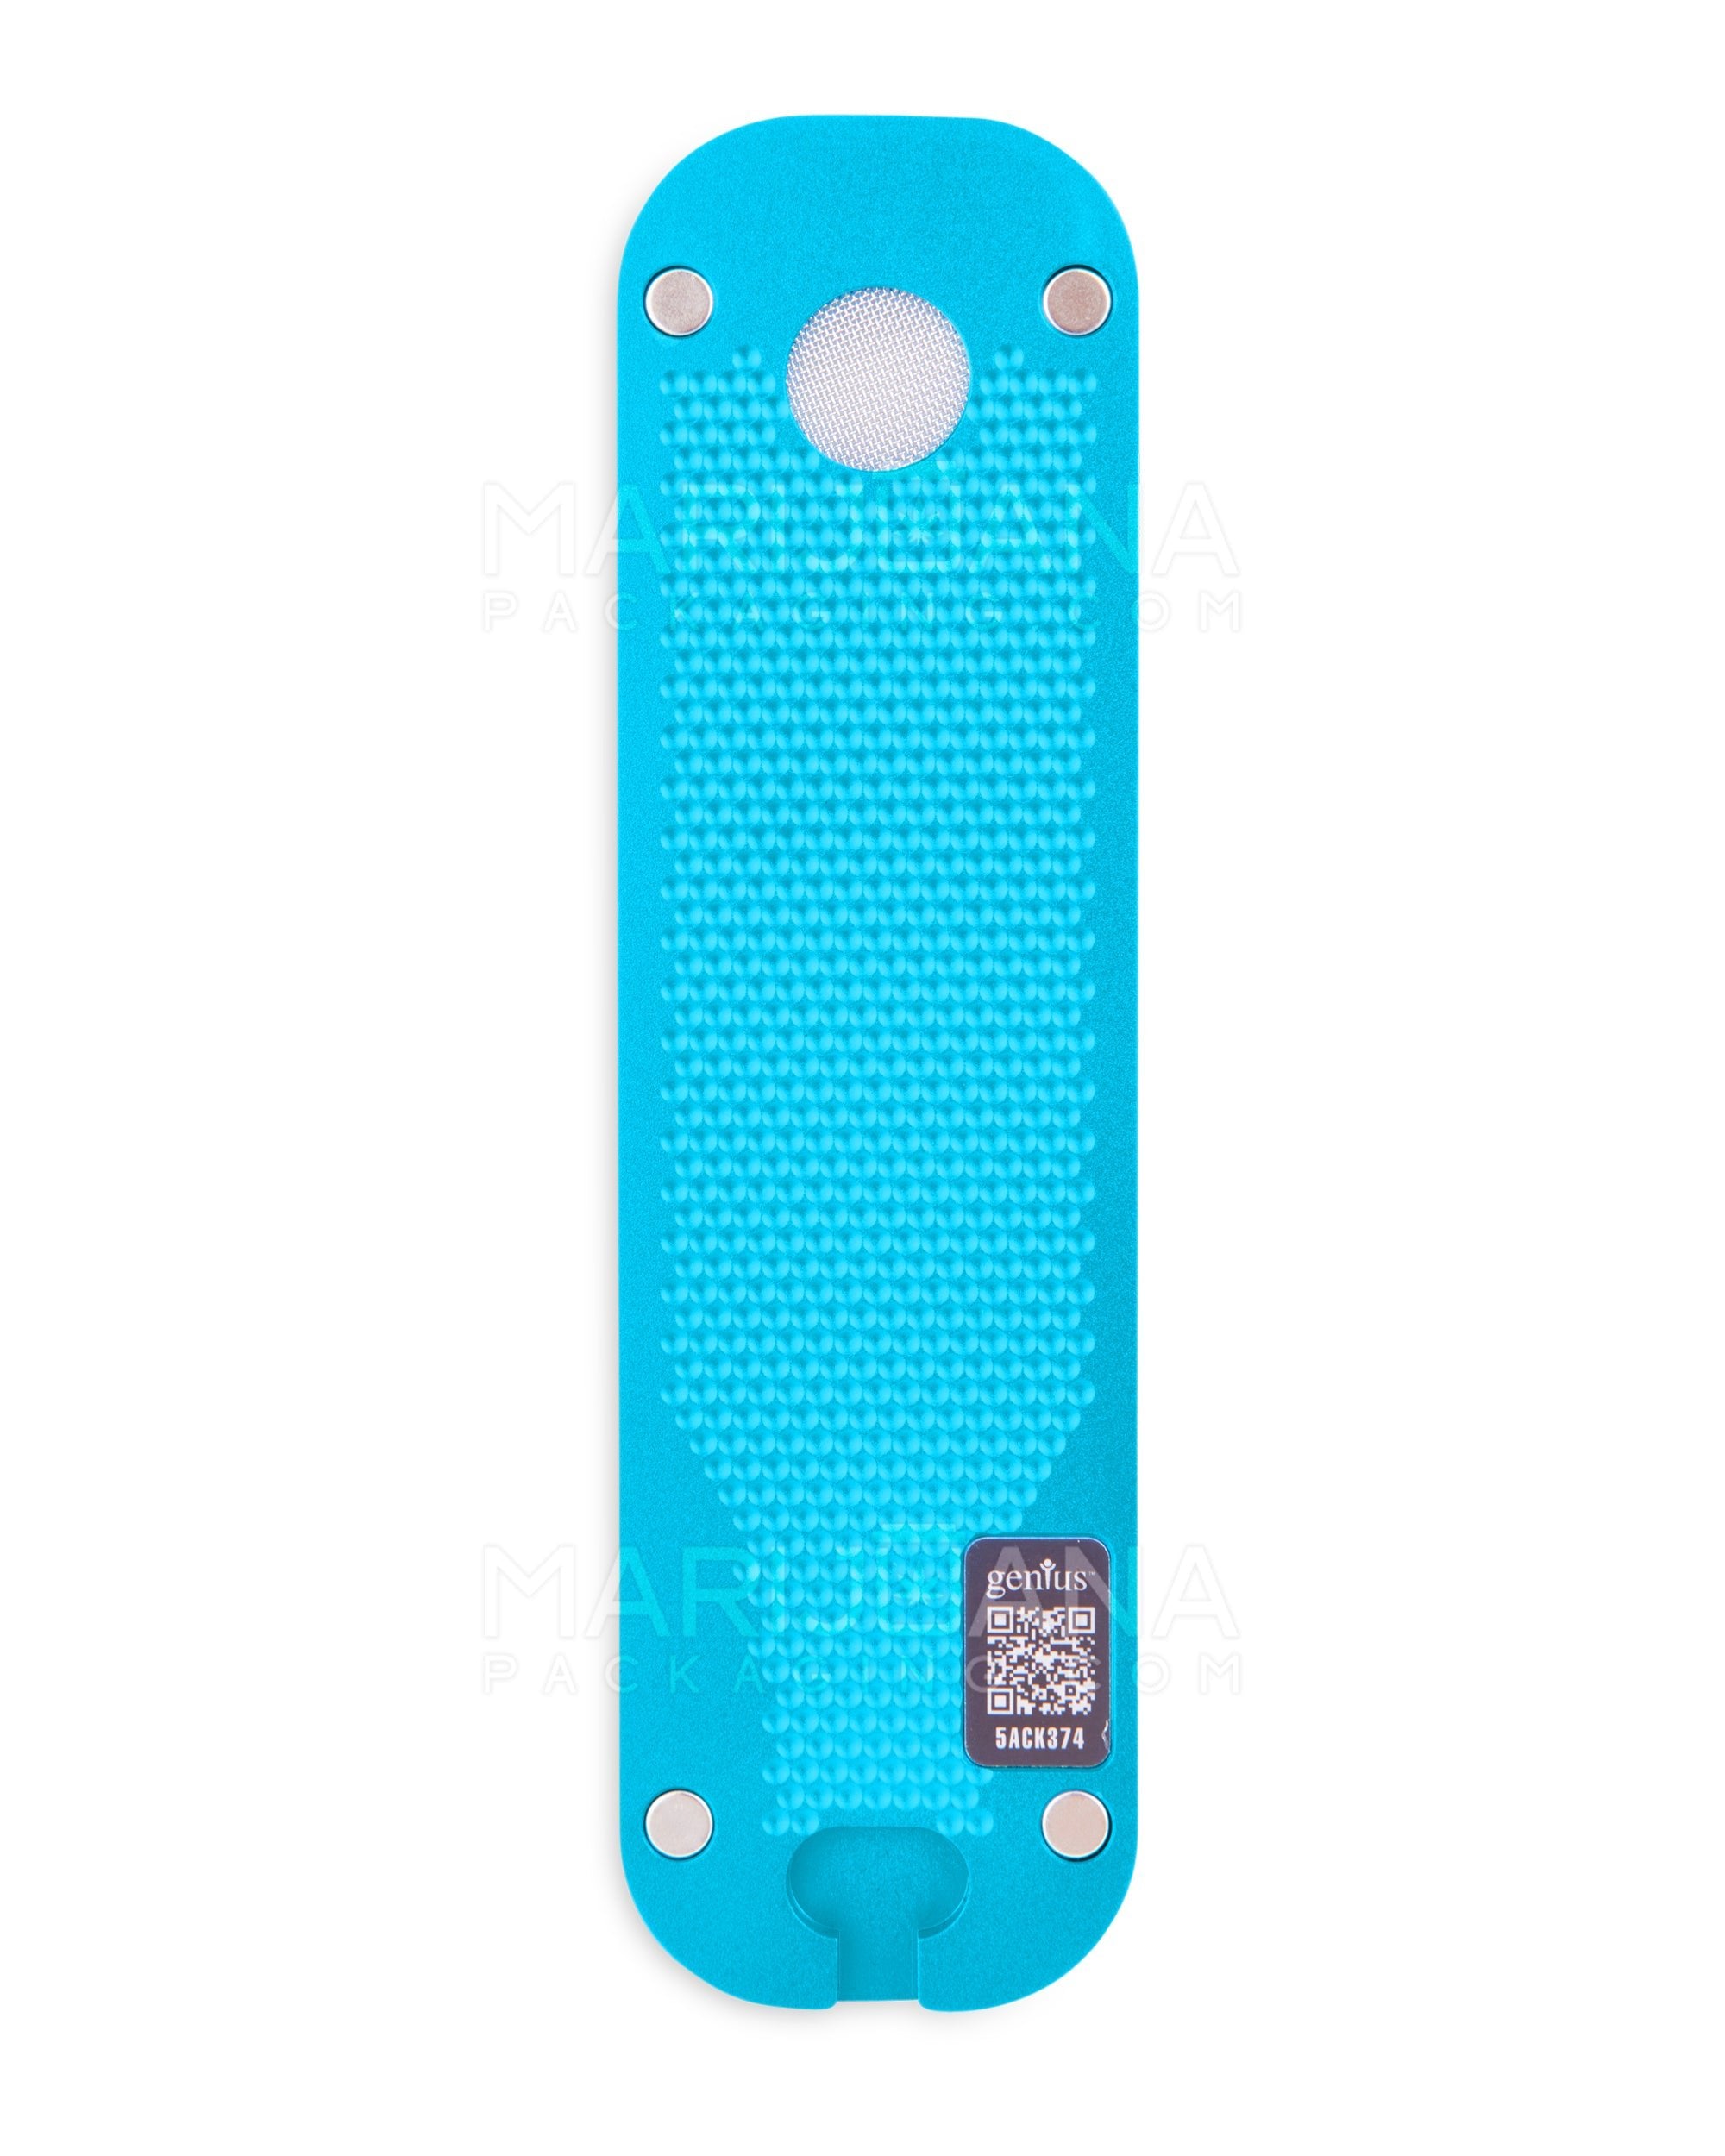 GENIUS PIPE | Mini Color Magnetic Slider Pipe | 5in Long - Metal - Blue - 12